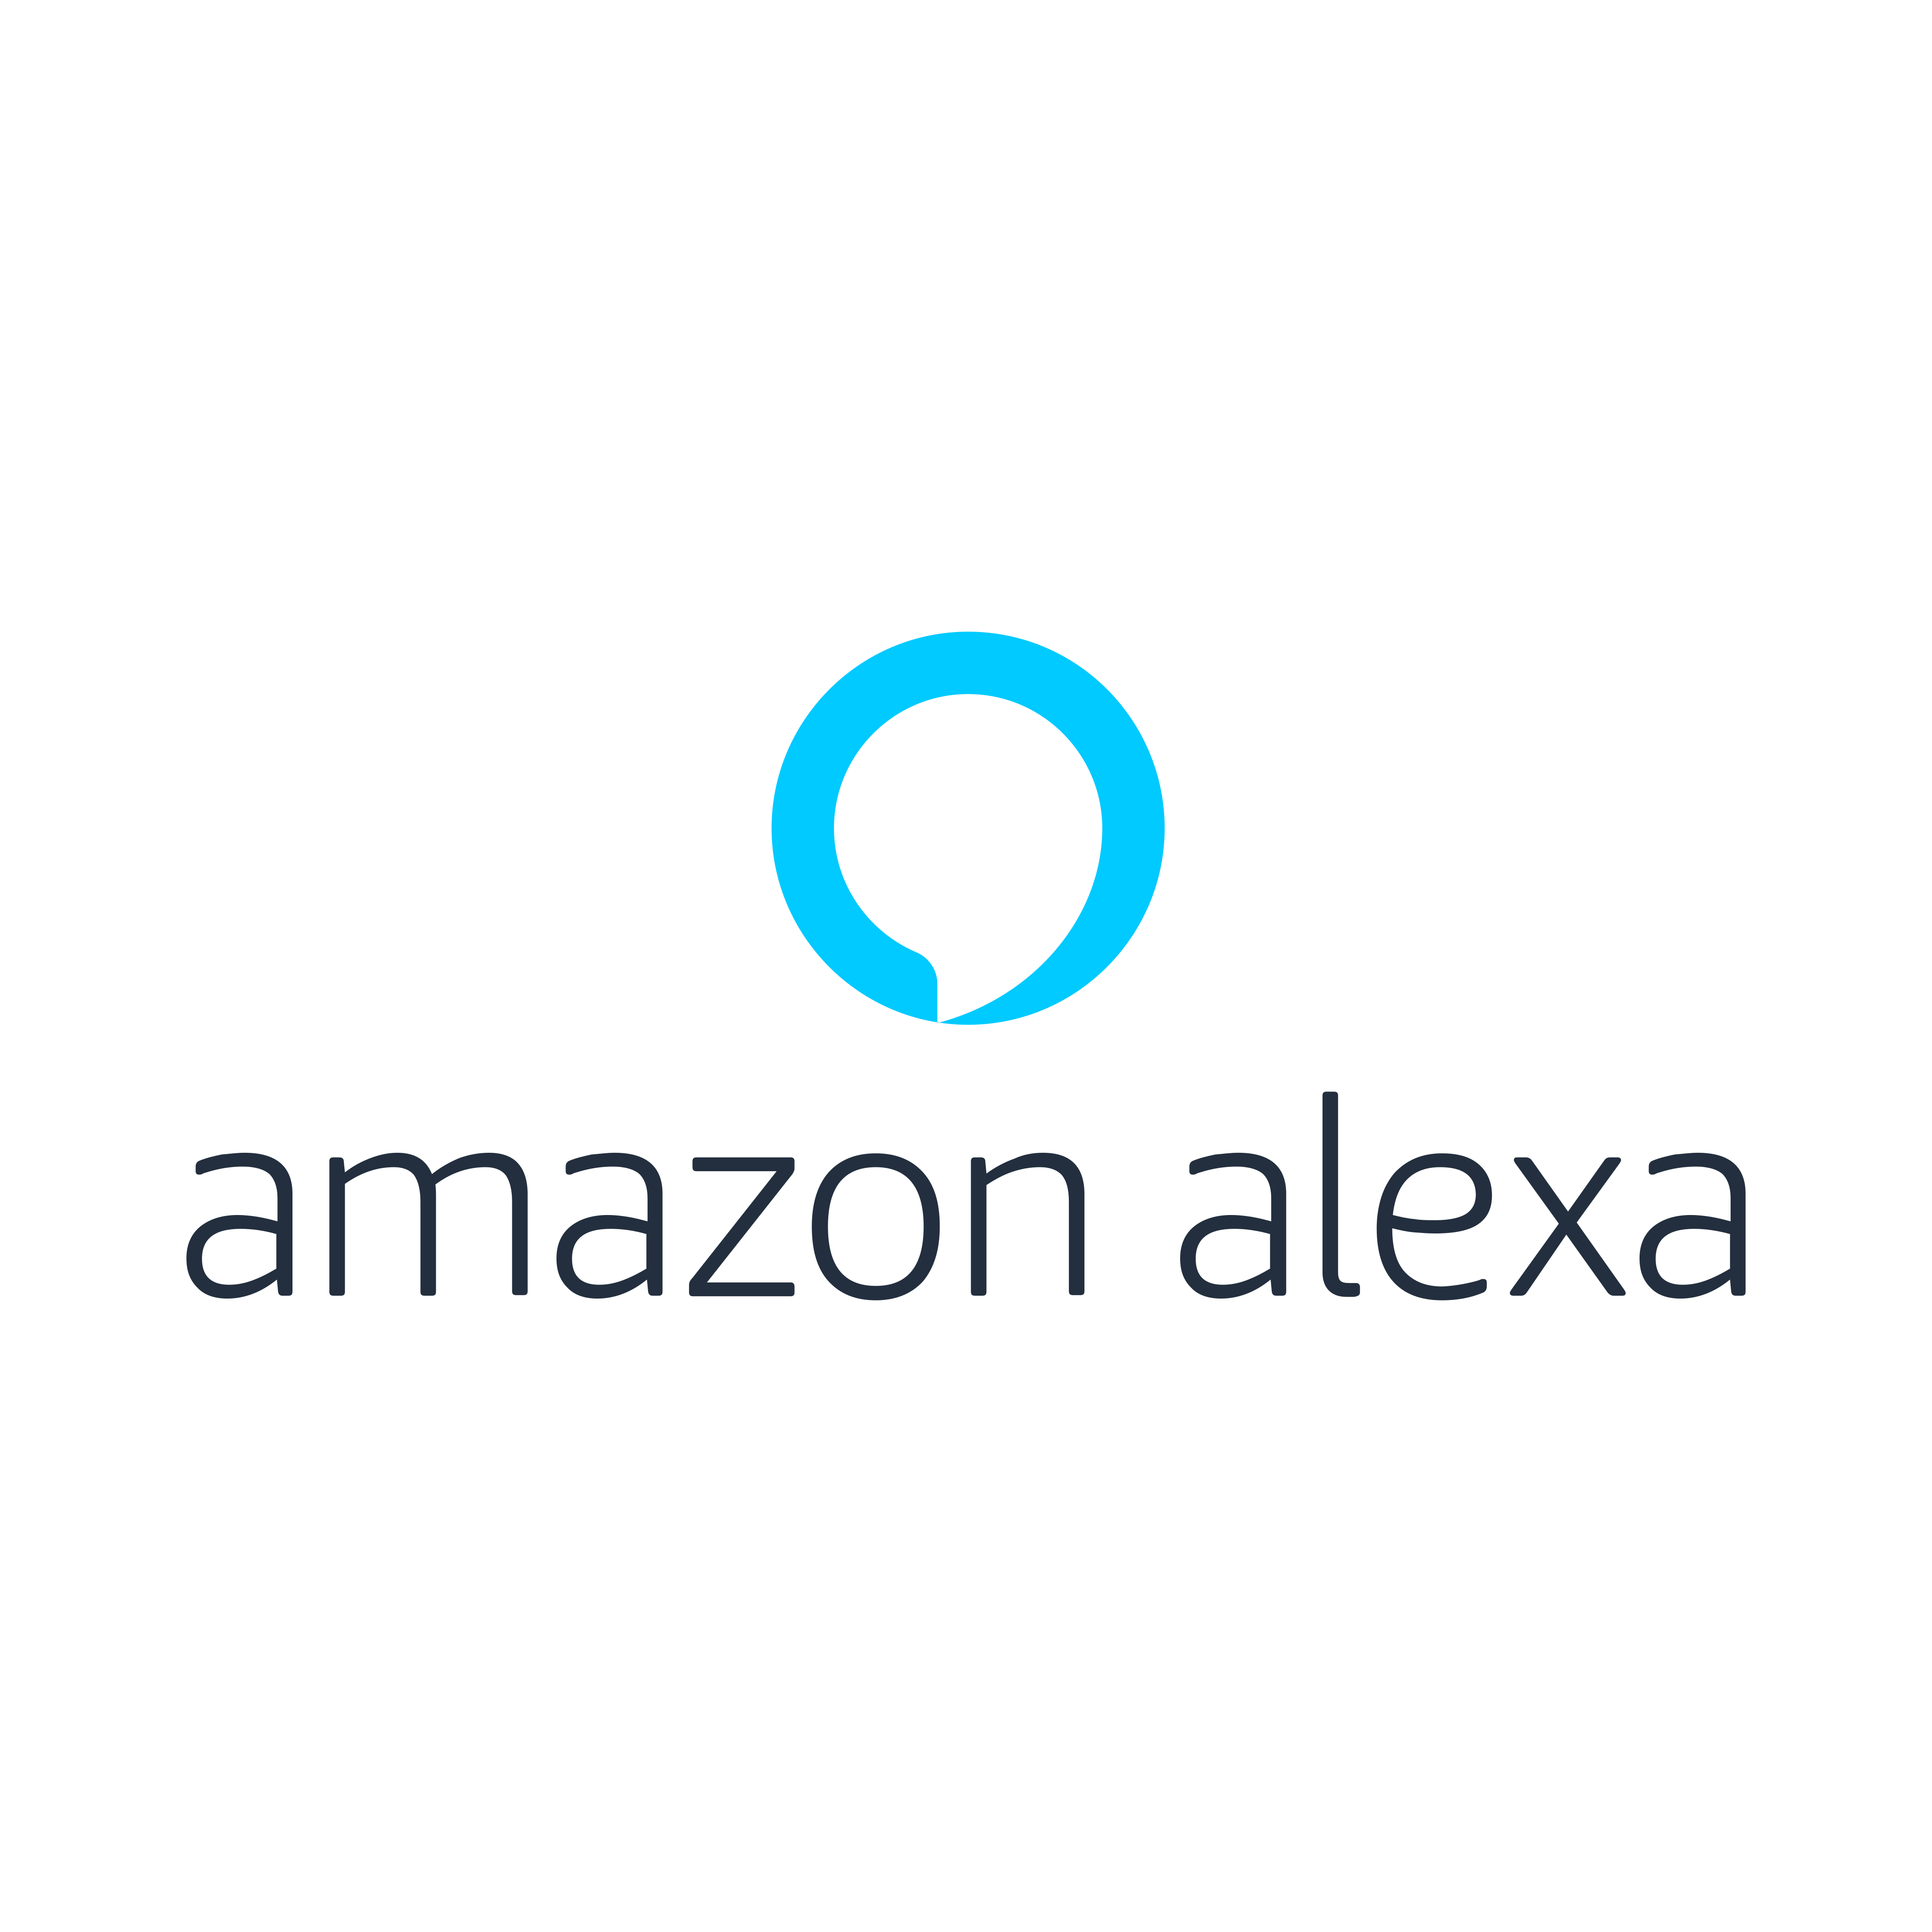 amazon alexa logo 0 - Amazon Alexa Logo